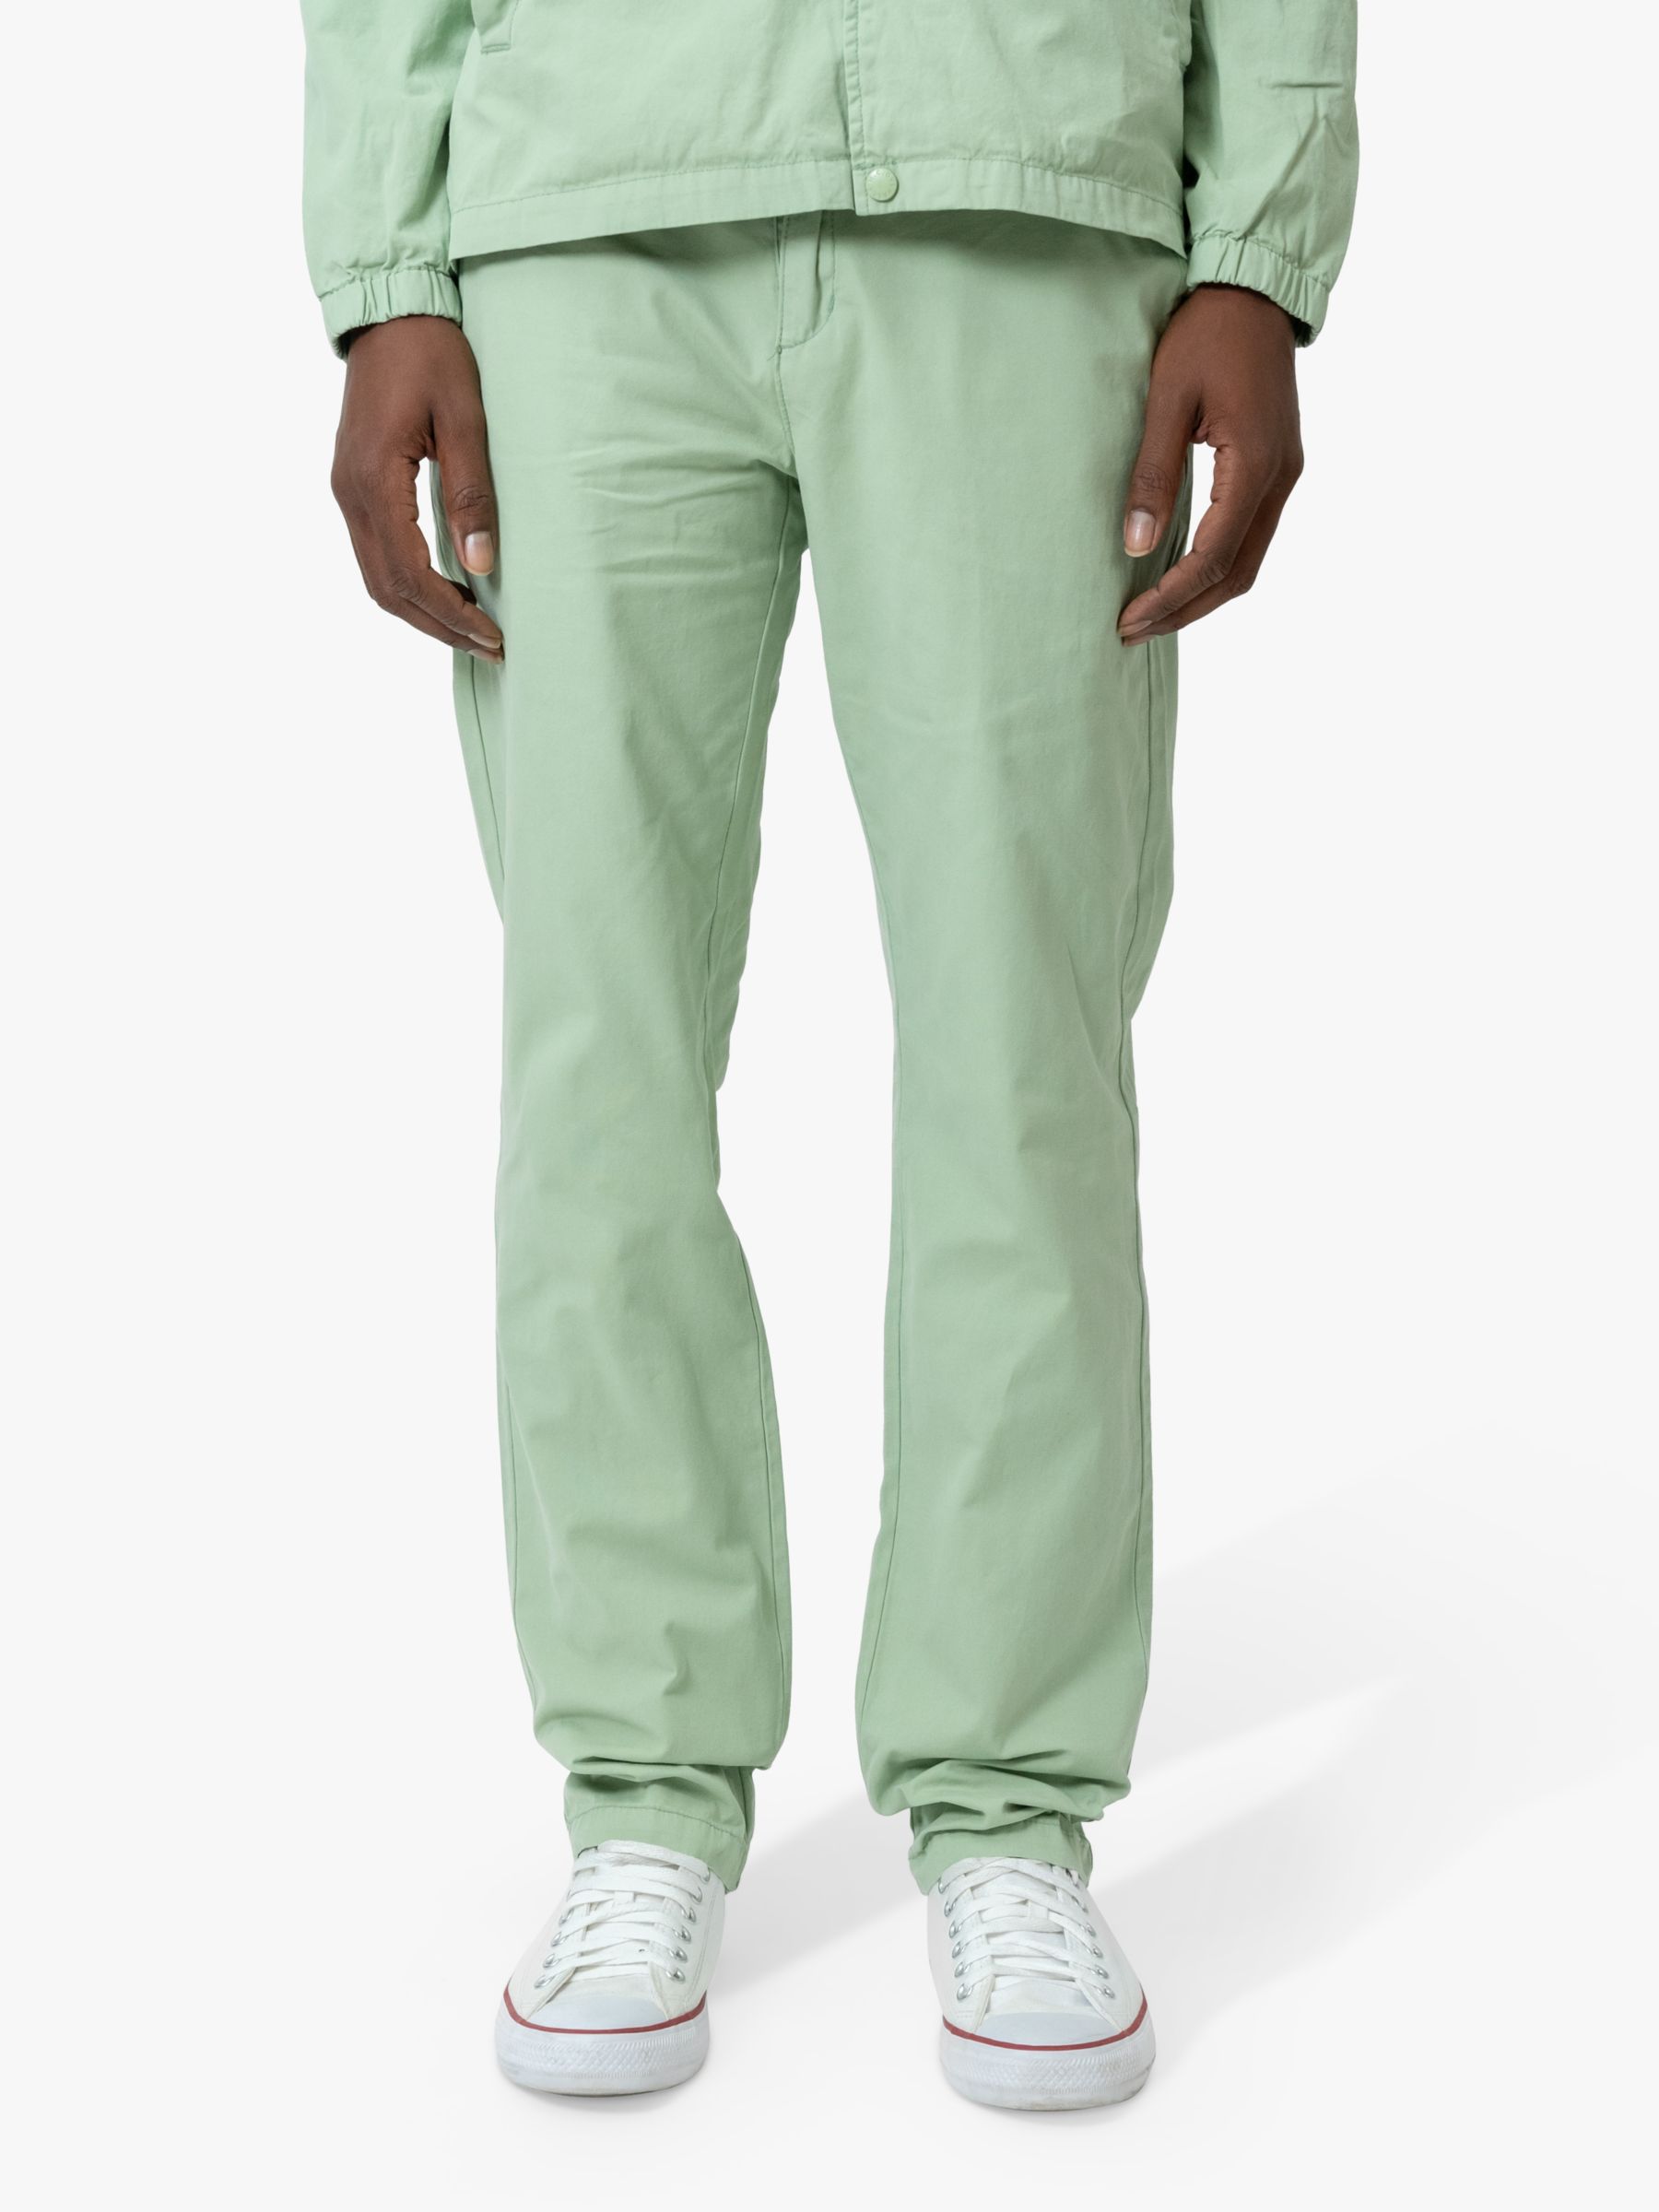 M.C.Overalls Slim Fit Lightweight Cotton Trousers, Dark Mint, W34/L34